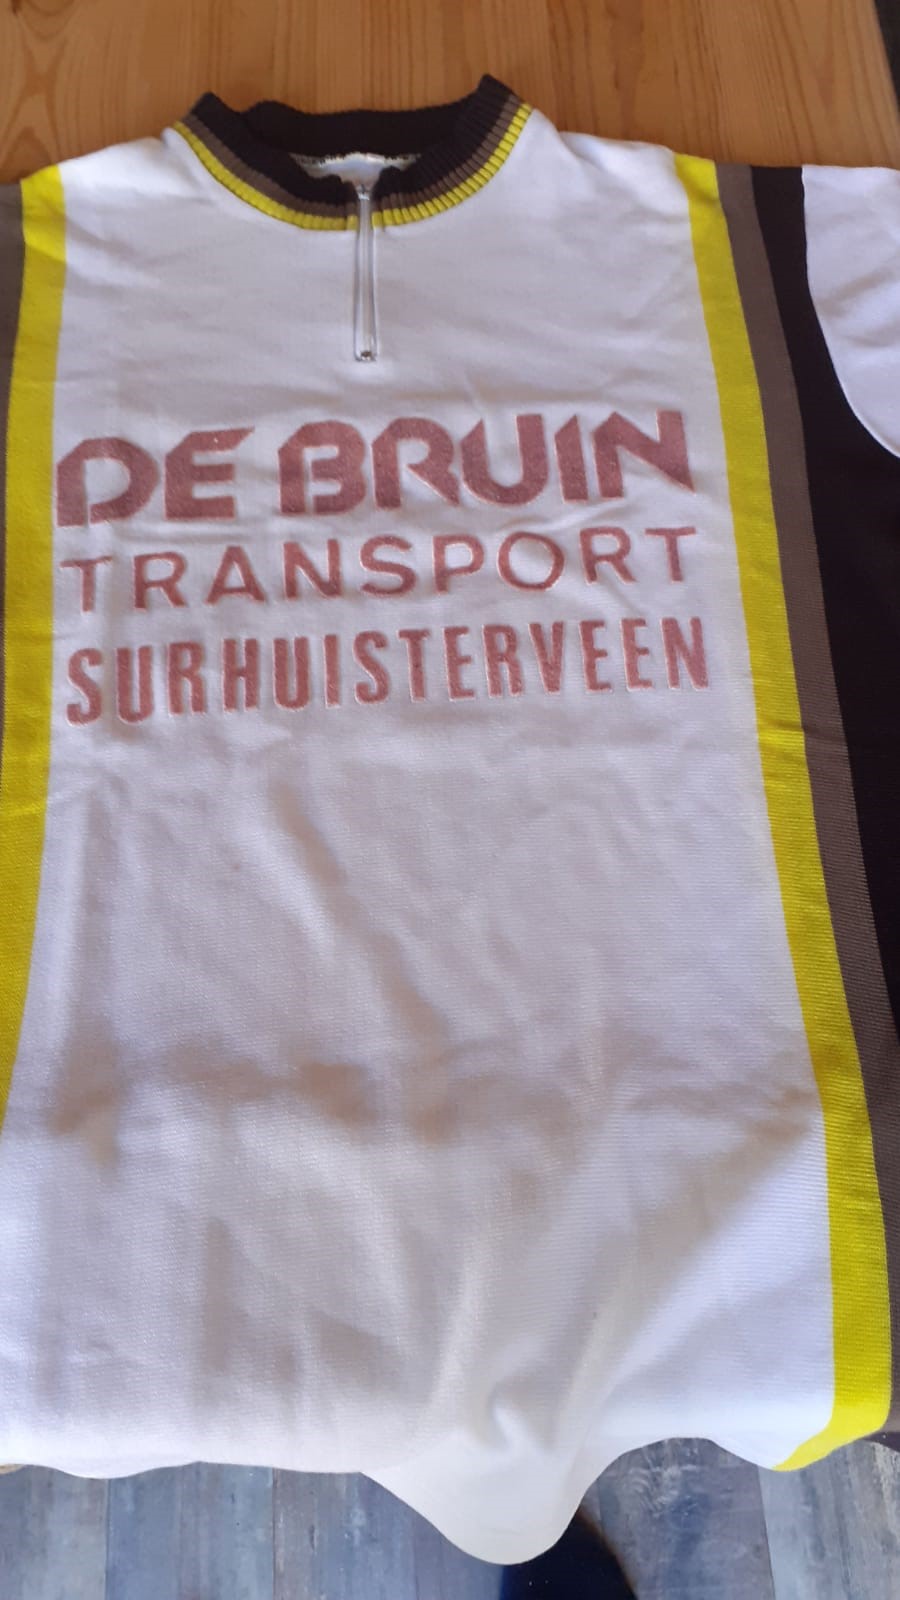 Boek over De Bruin Transport Surhuisterveen in voorbereiding